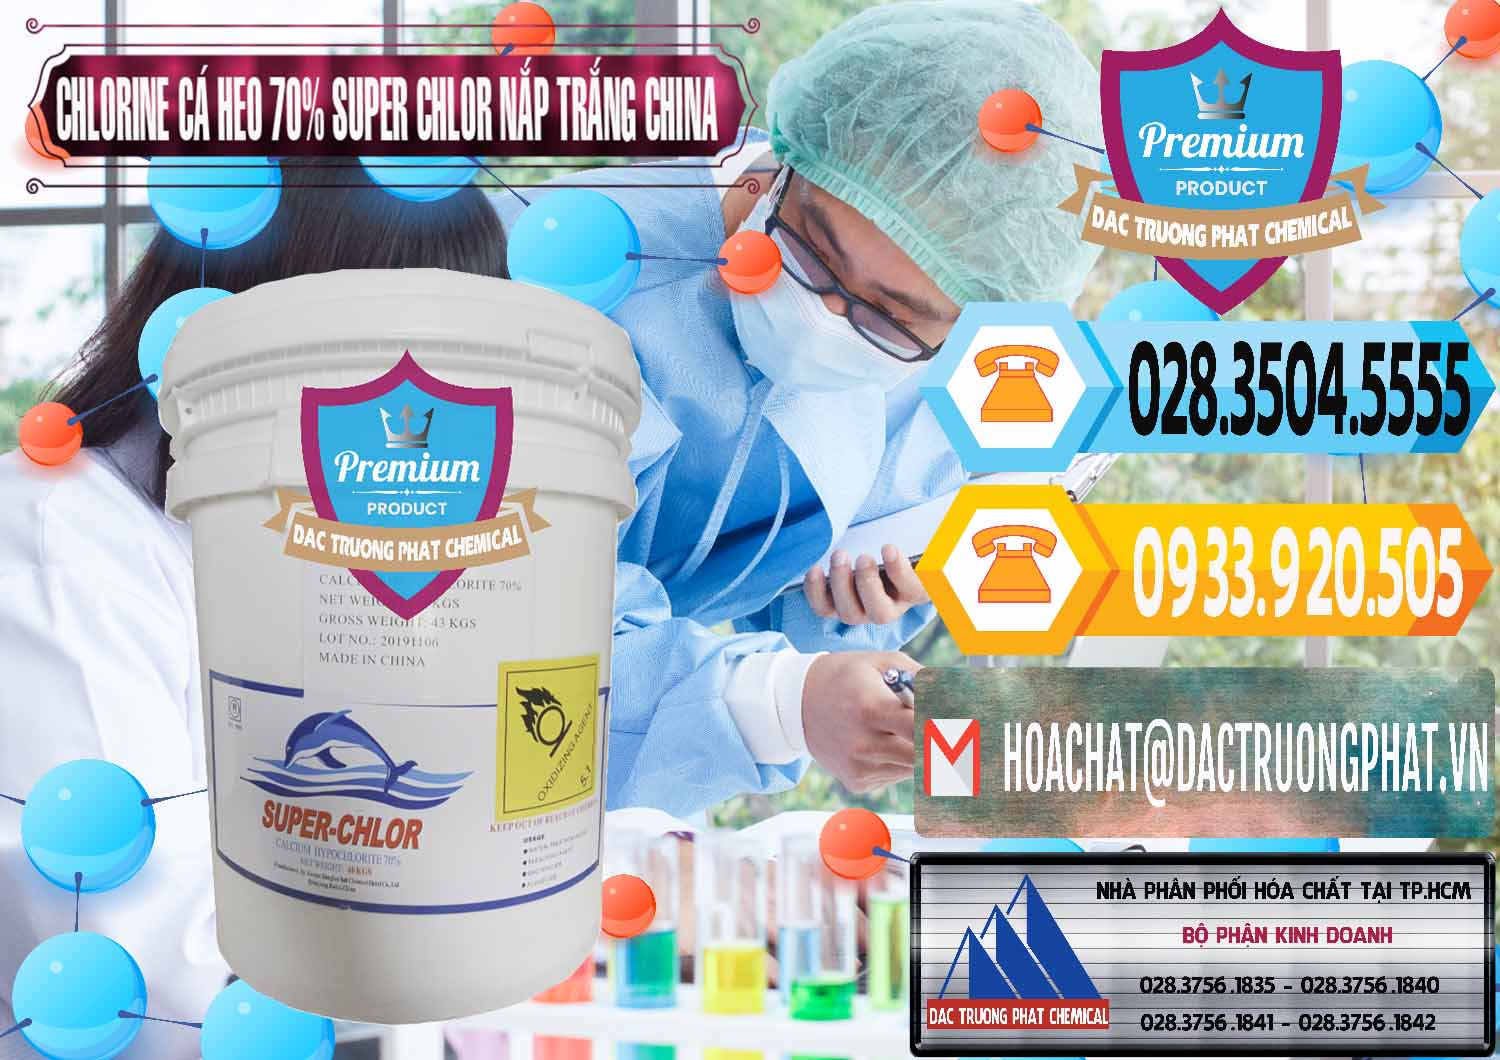 Nhà phân phối - bán Clorin - Chlorine Cá Heo 70% Super Chlor Nắp Trắng Trung Quốc China - 0240 - Nhà nhập khẩu ( phân phối ) hóa chất tại TP.HCM - hoachattayrua.net